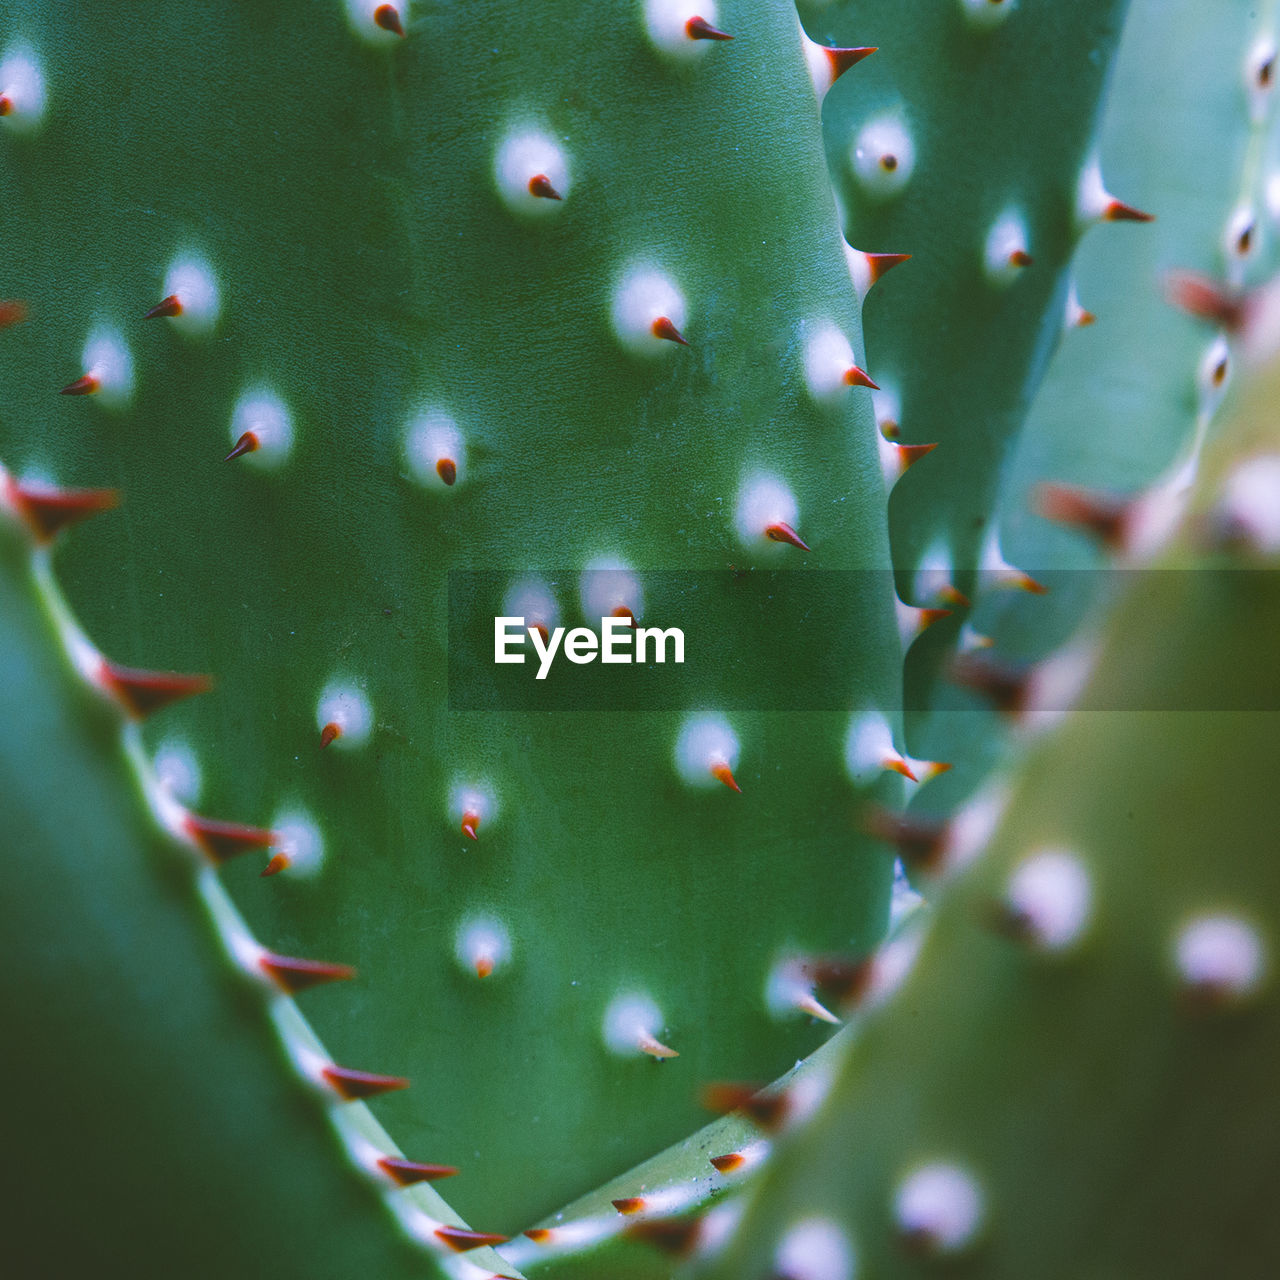 Plant close-up texture. cactus. plants lover concept. colors design